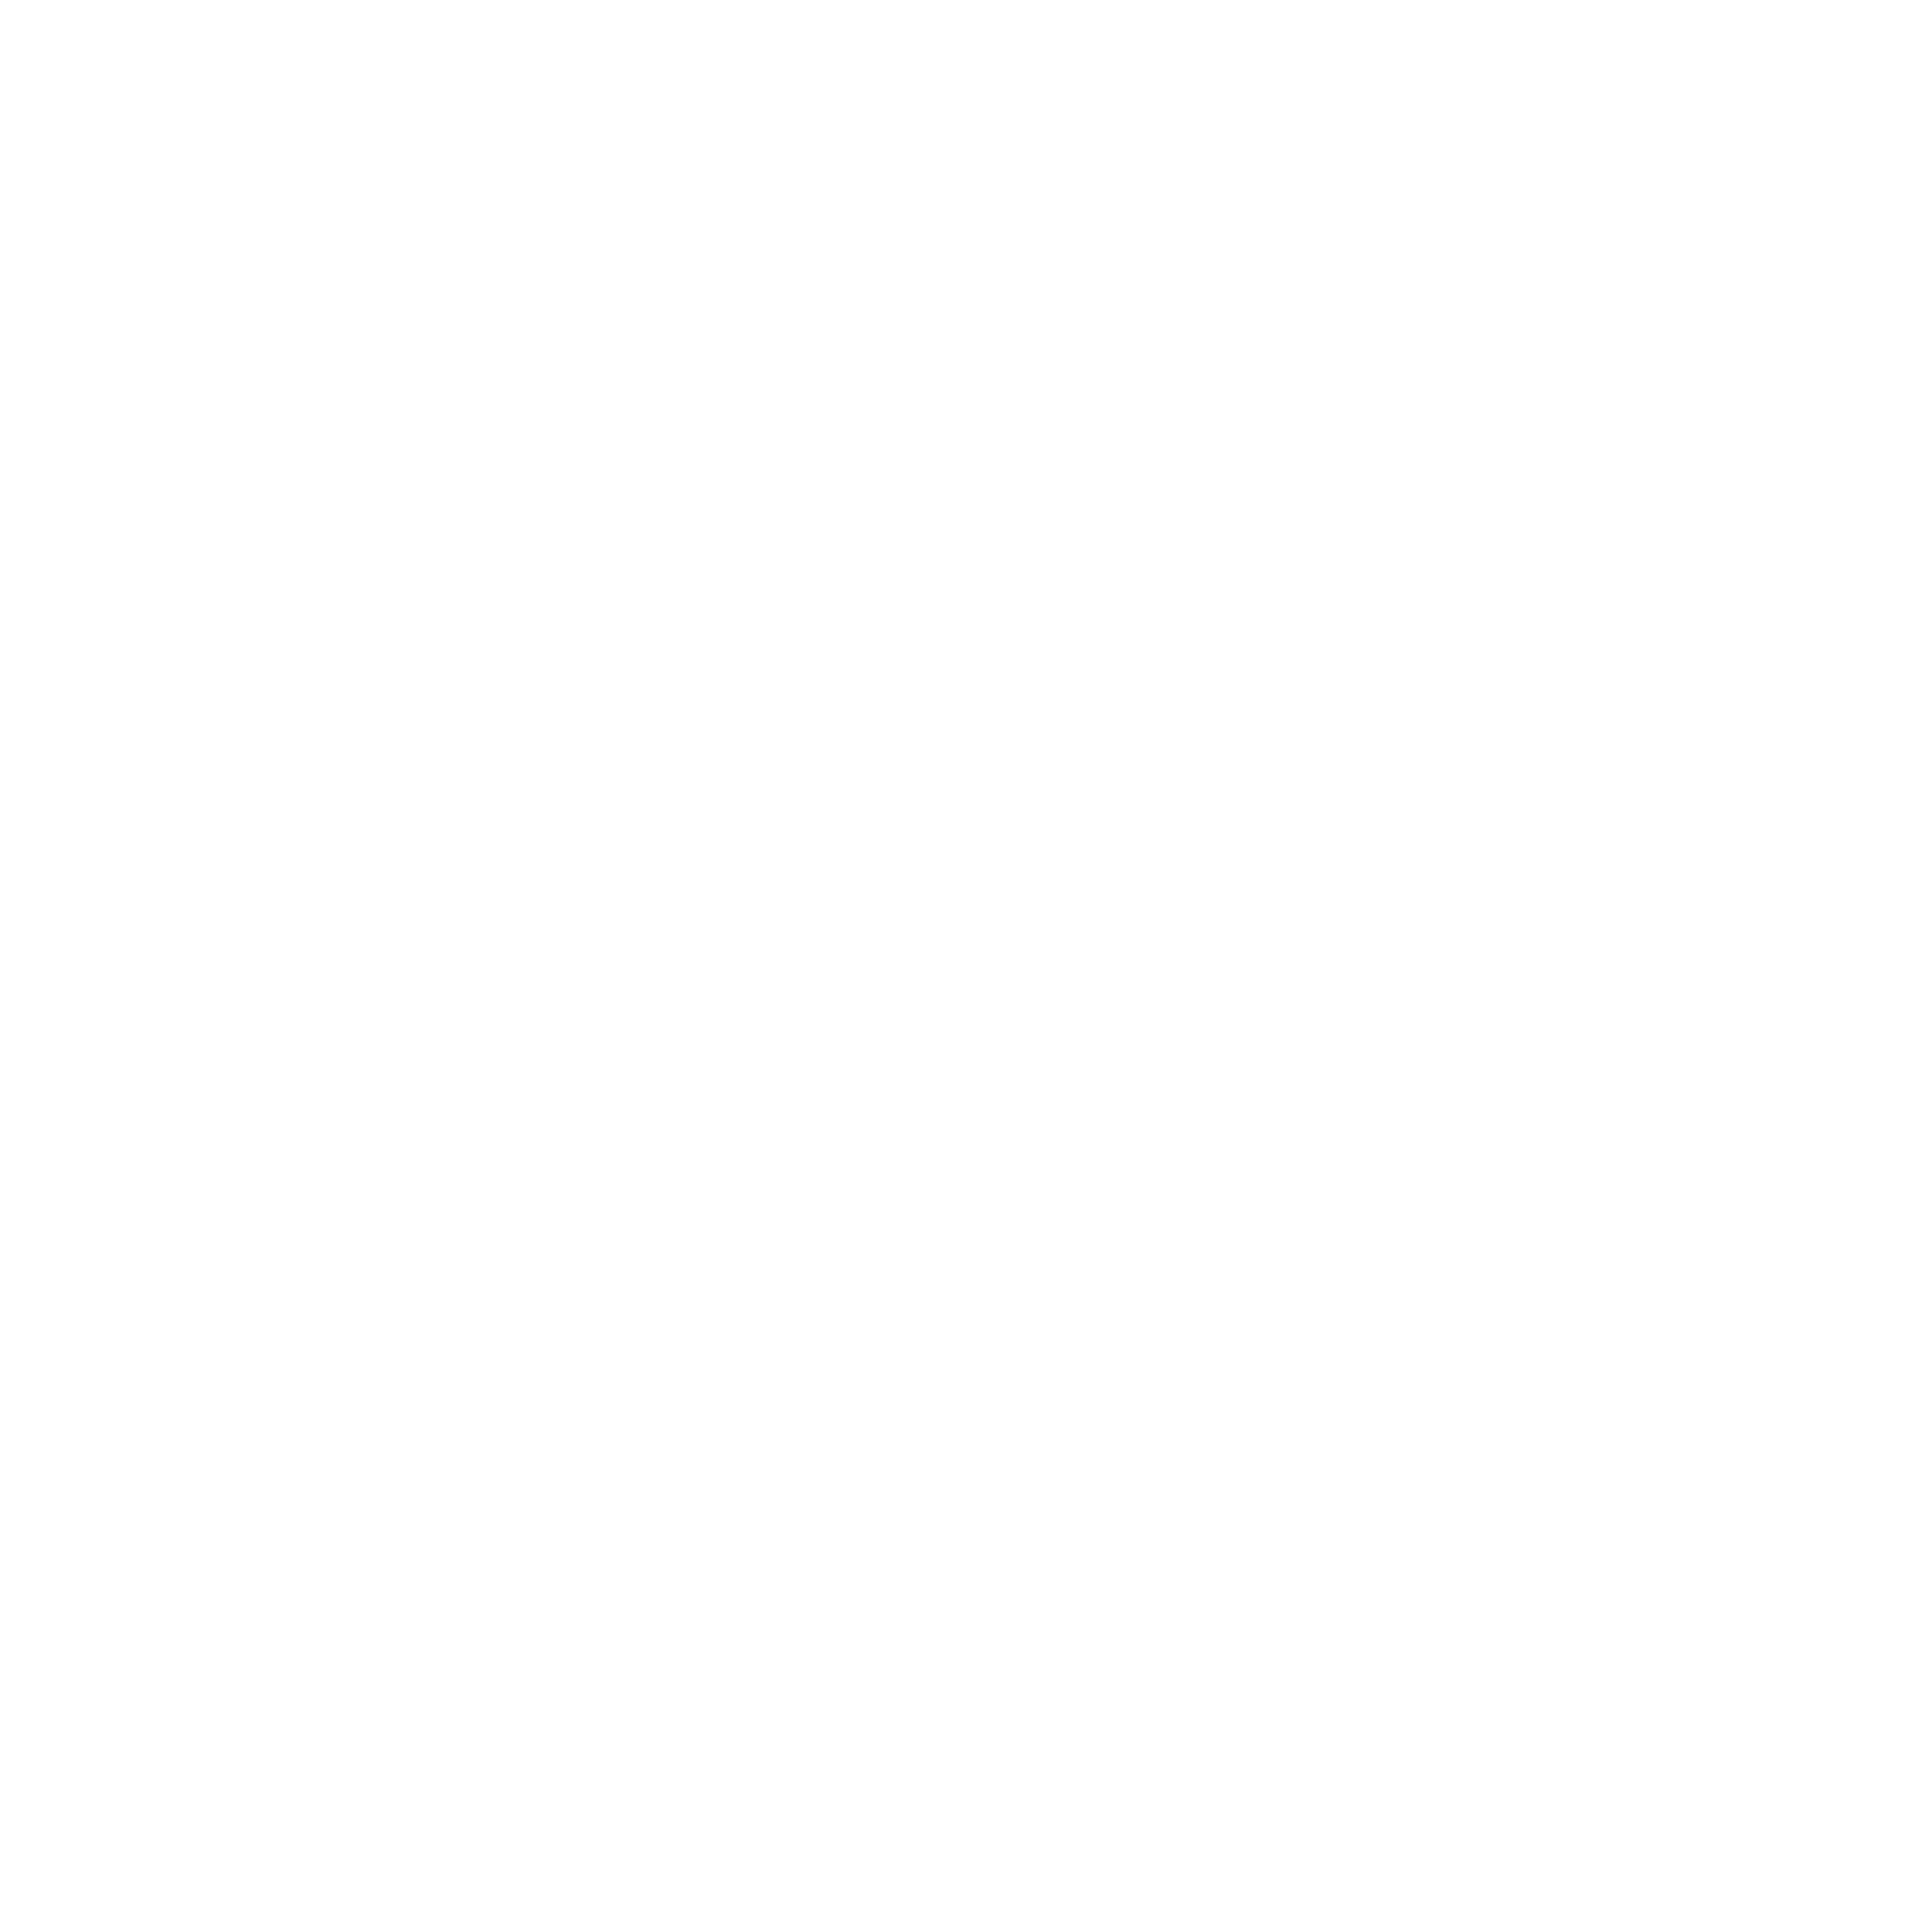 Illustration eines Mannes auf einem Laufband